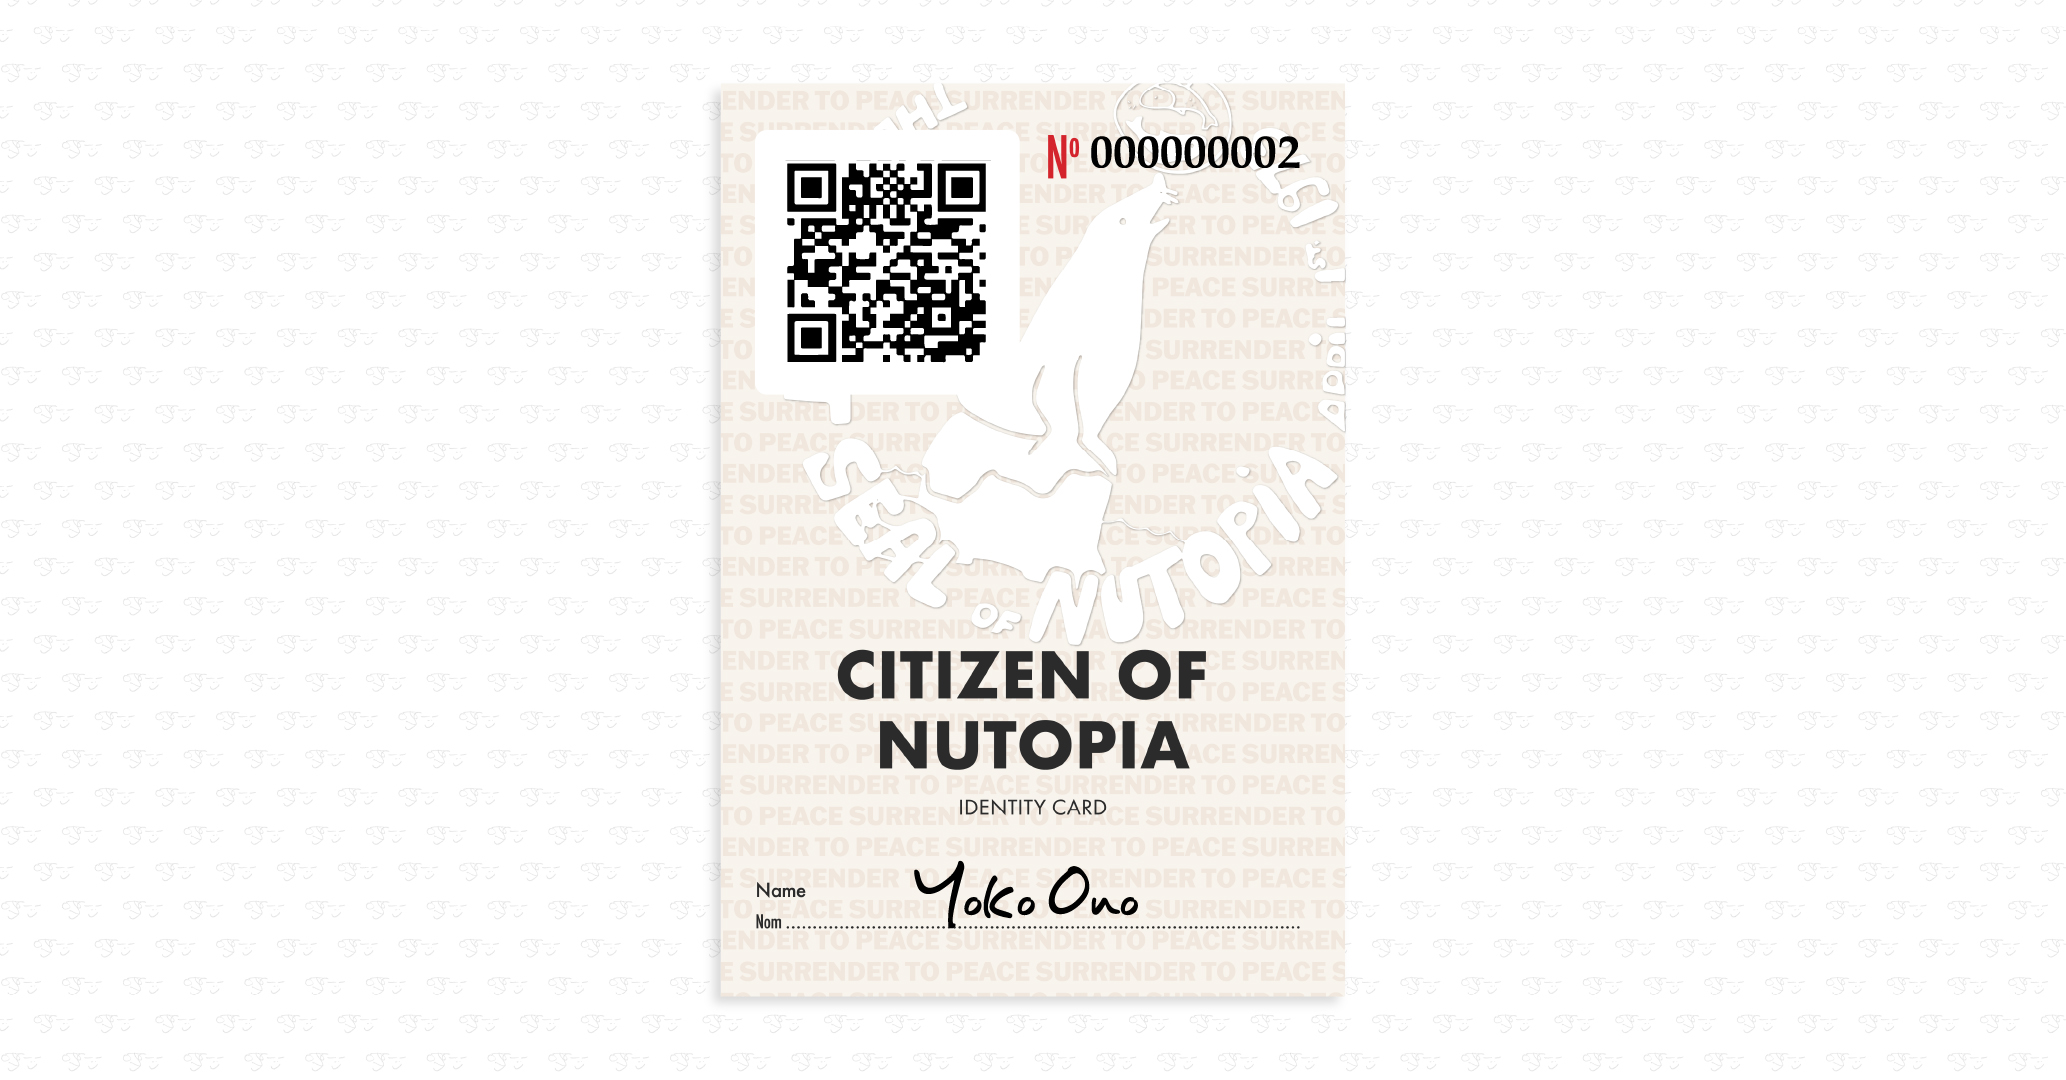 Yoko Ono Citizen of Nutopia card